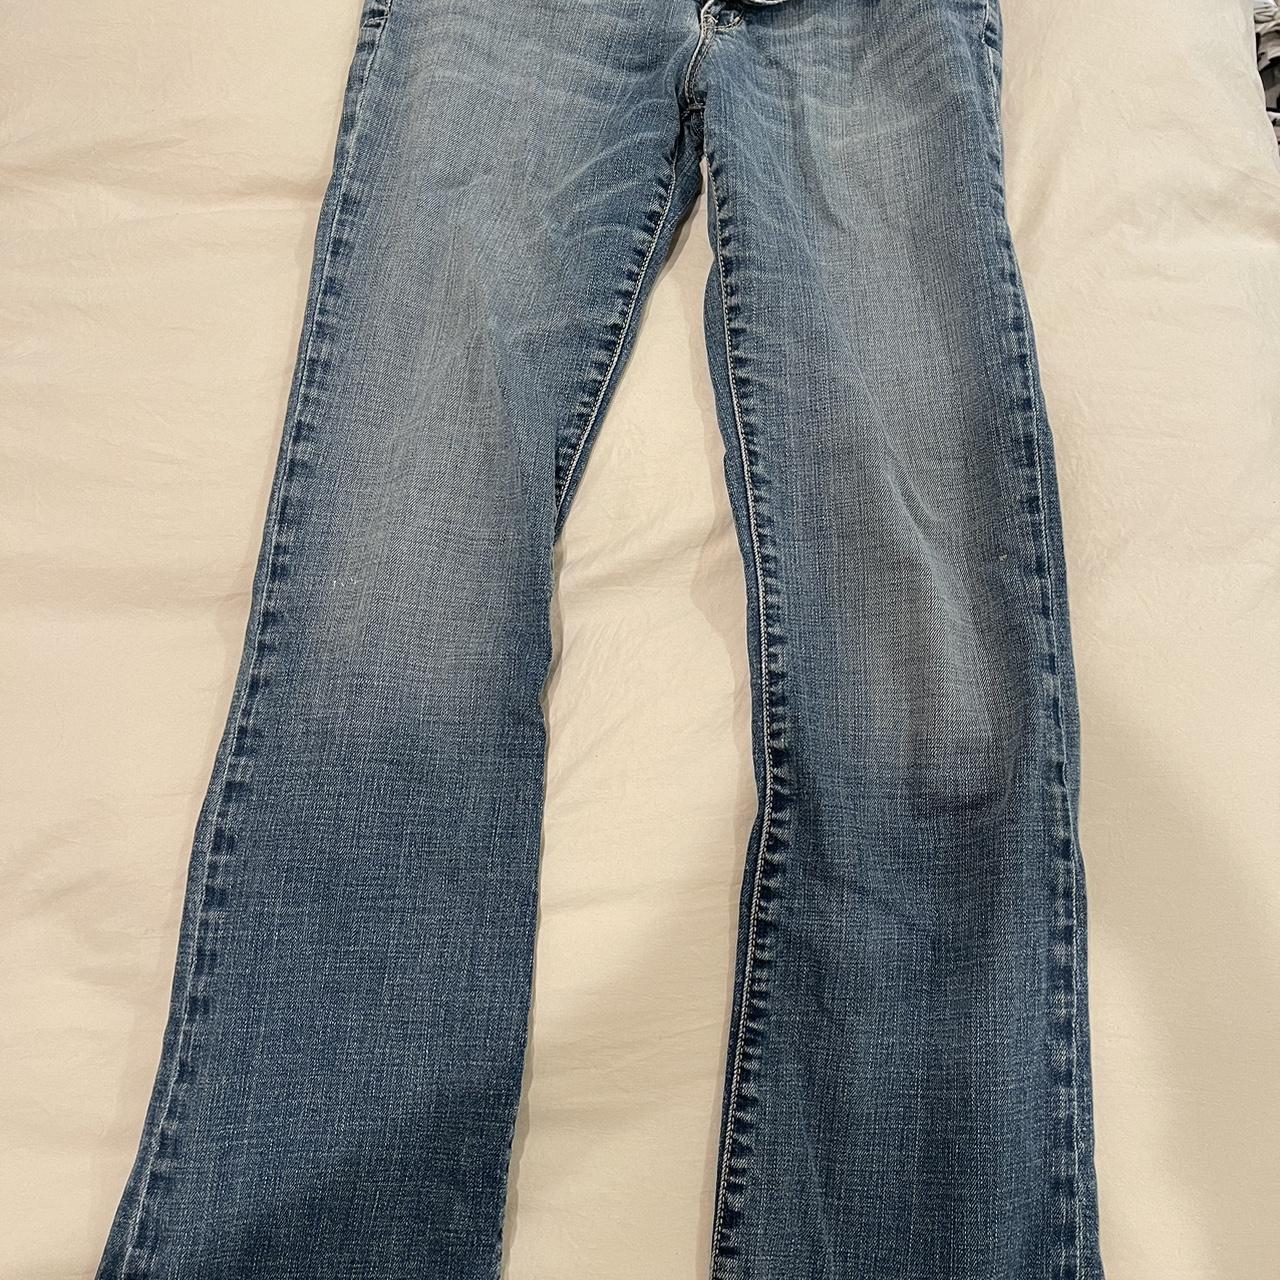 Vintage jeans low-rise - Depop